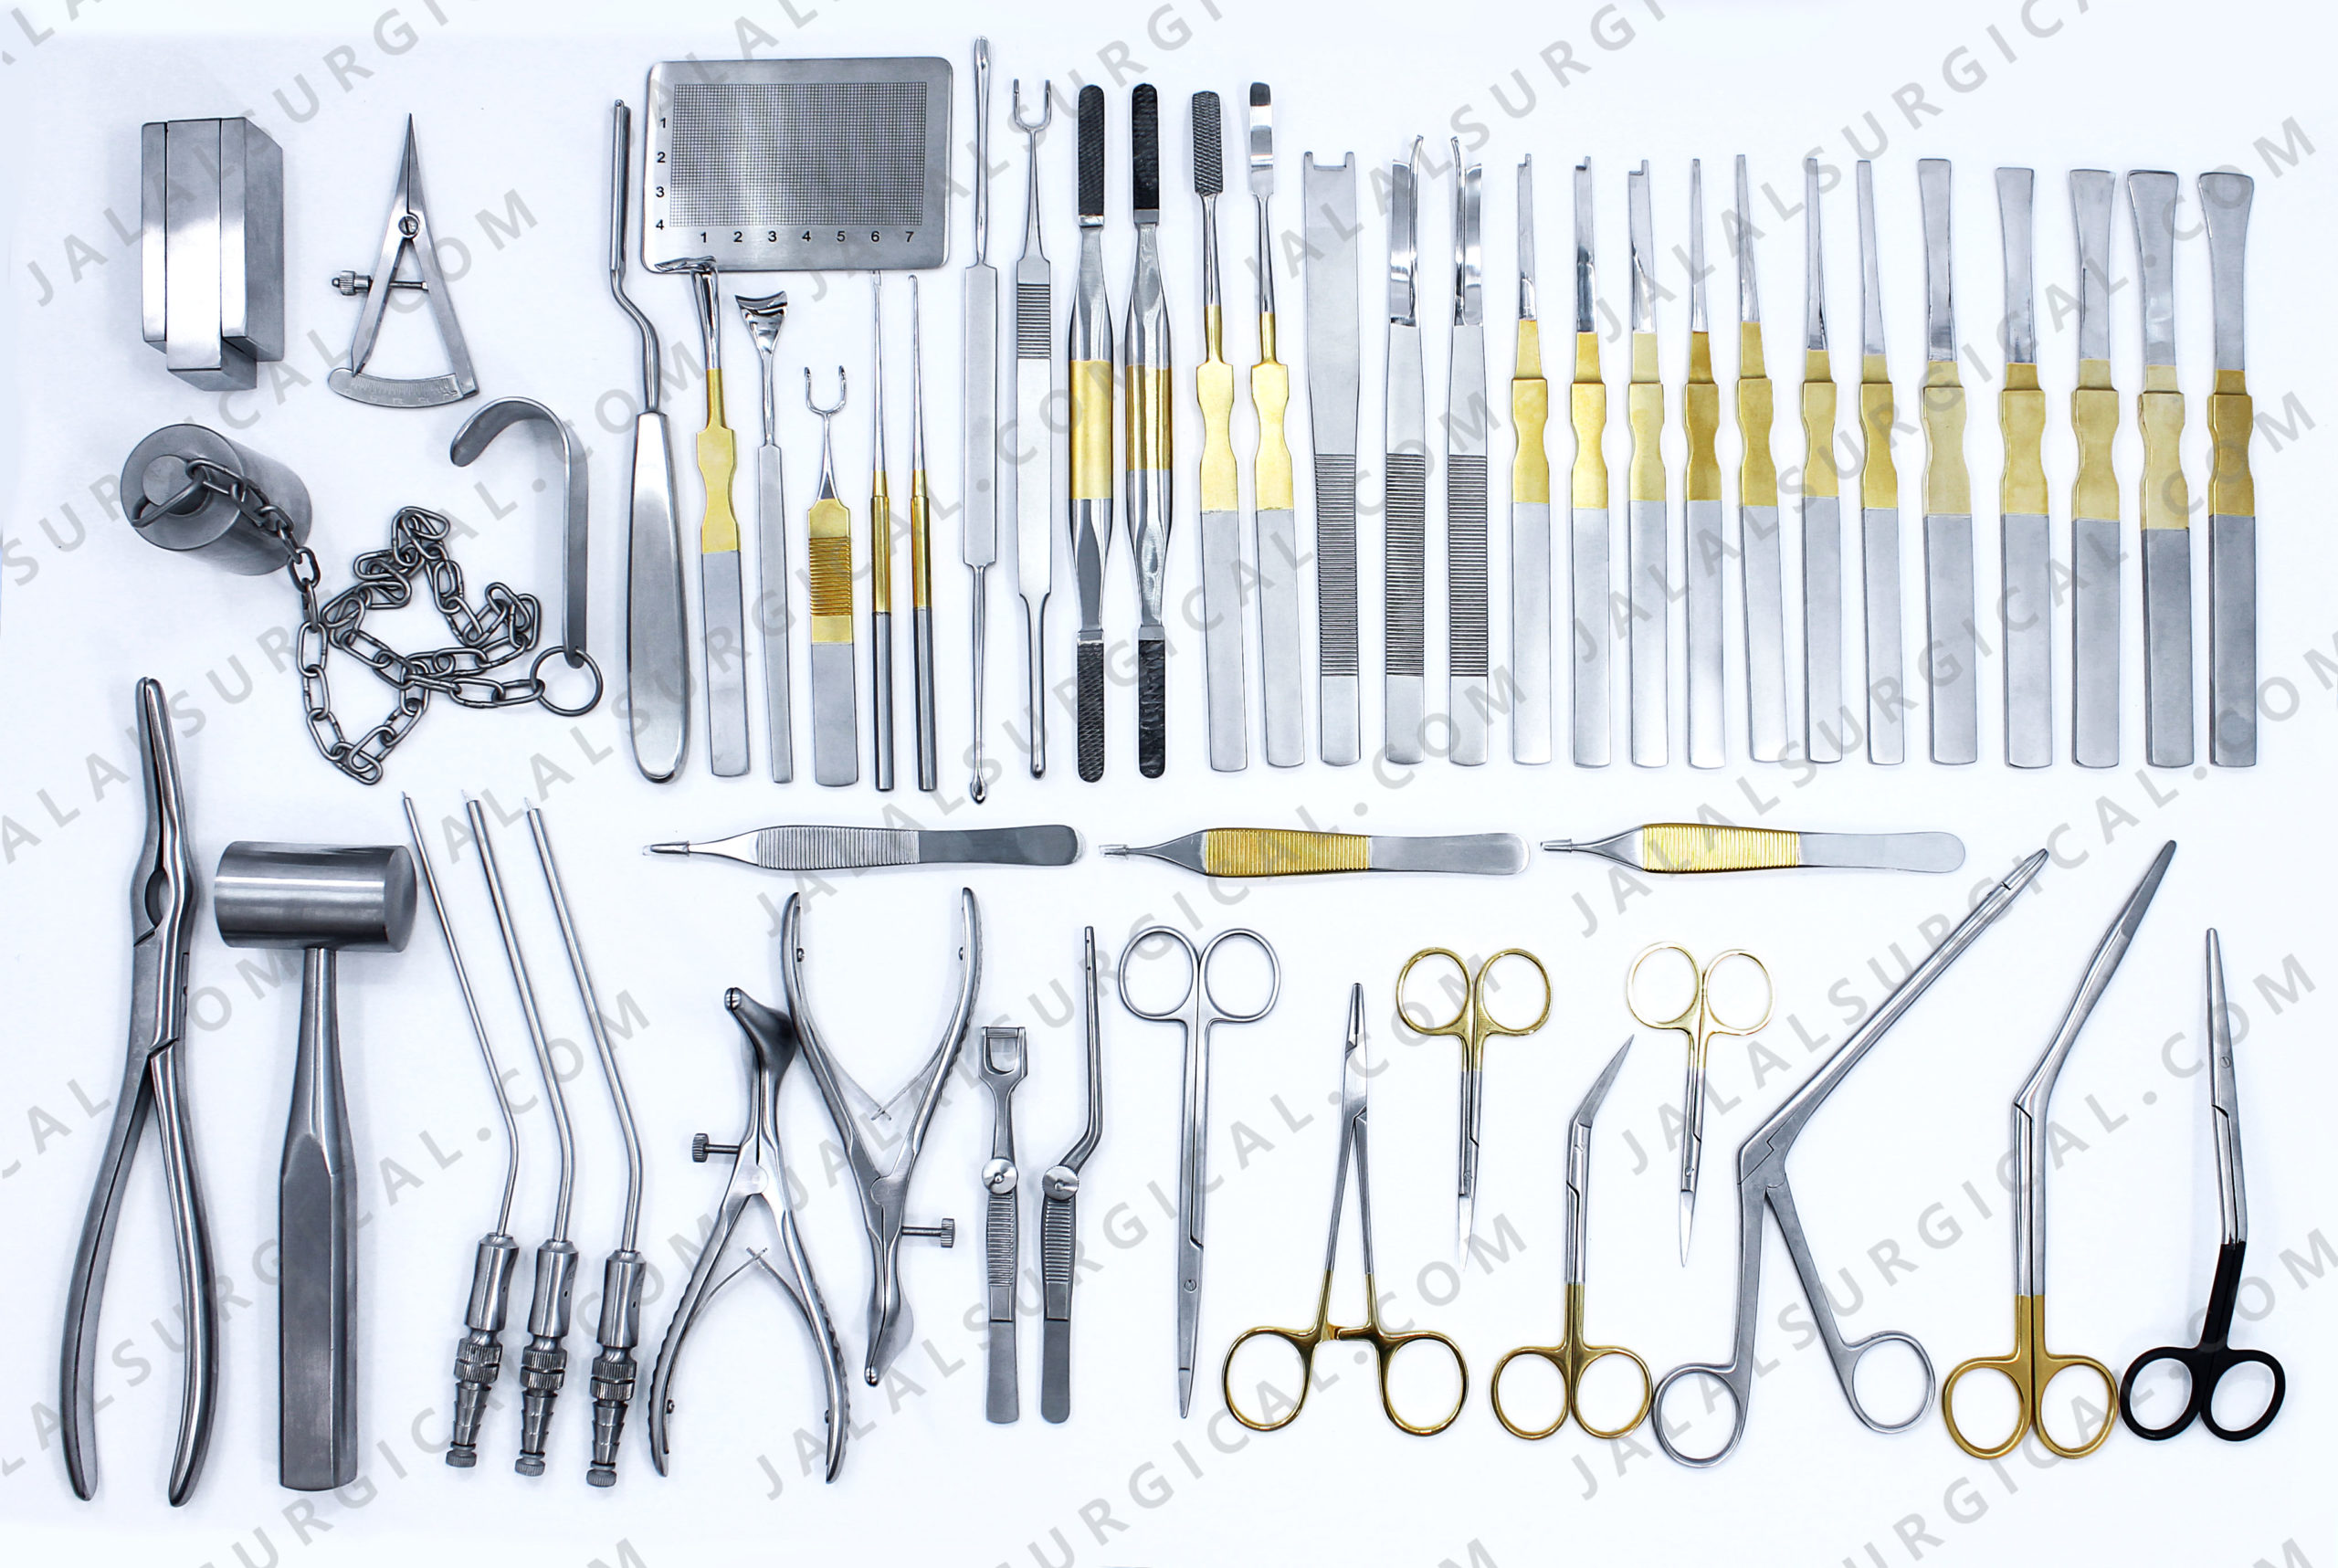 rhinoplasty instruments set